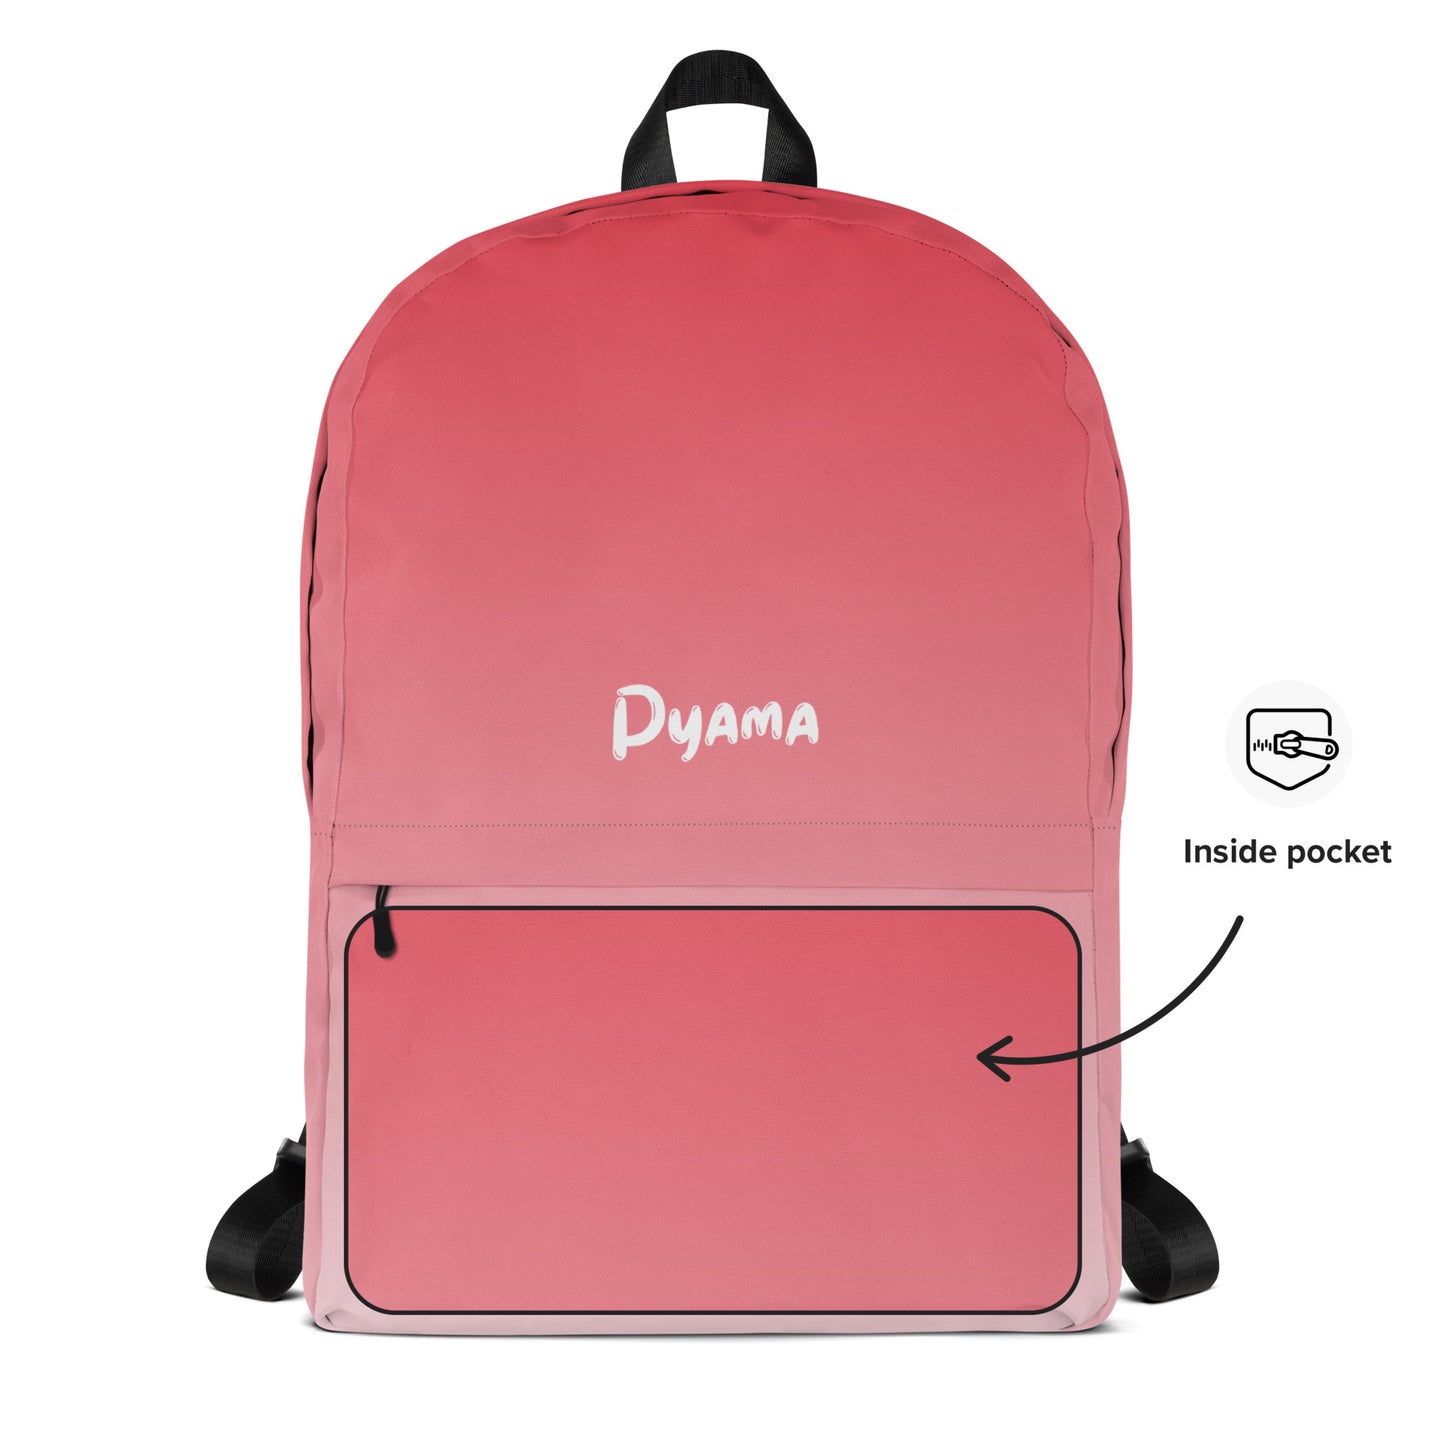 Backpack PYAMA Red